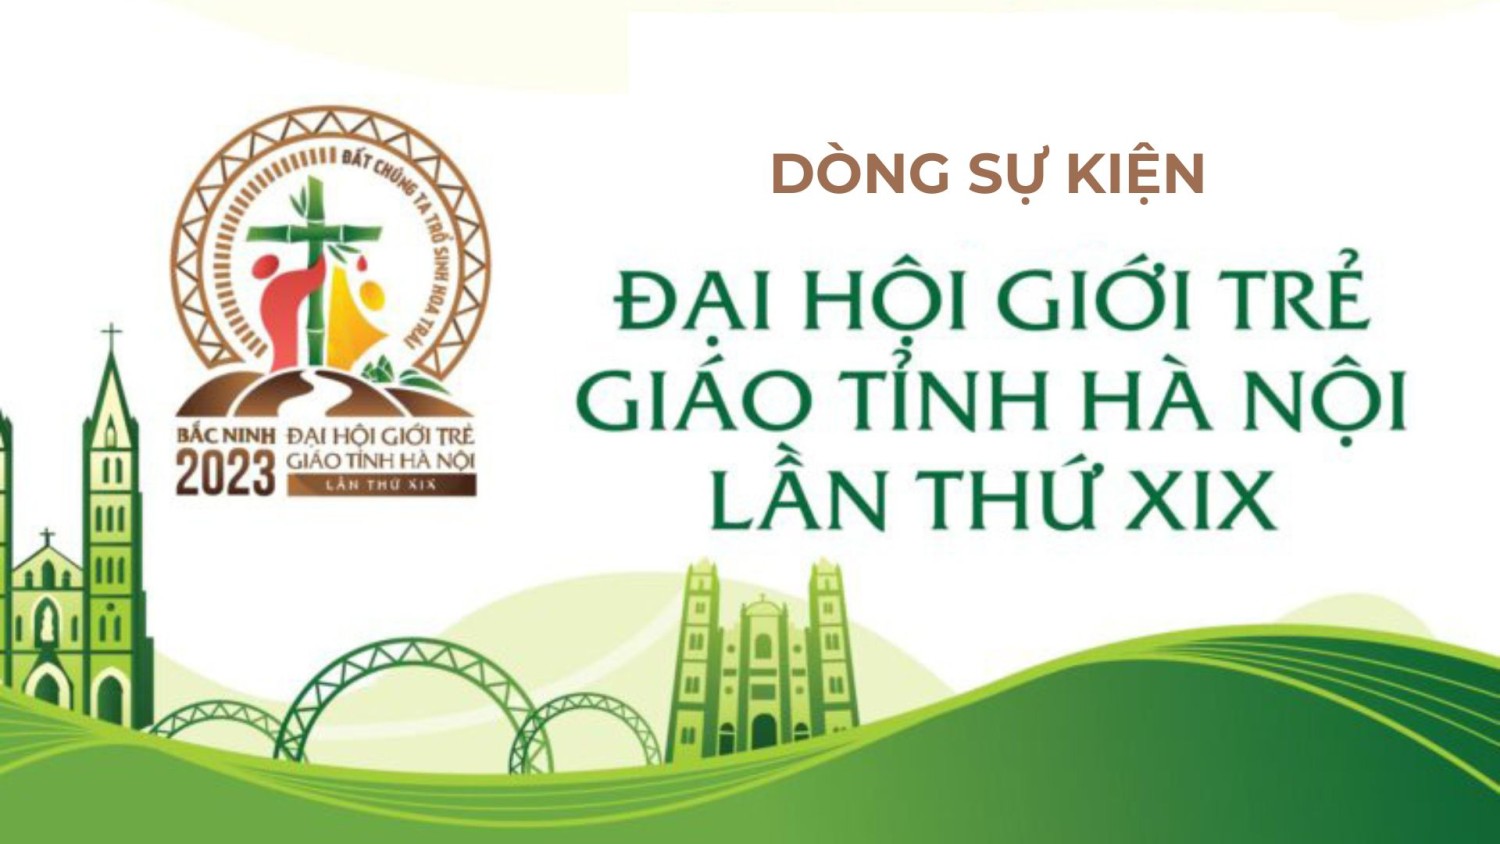 Trực tuyến: Đại hội giới trẻ giáo tỉnh Hà Nội